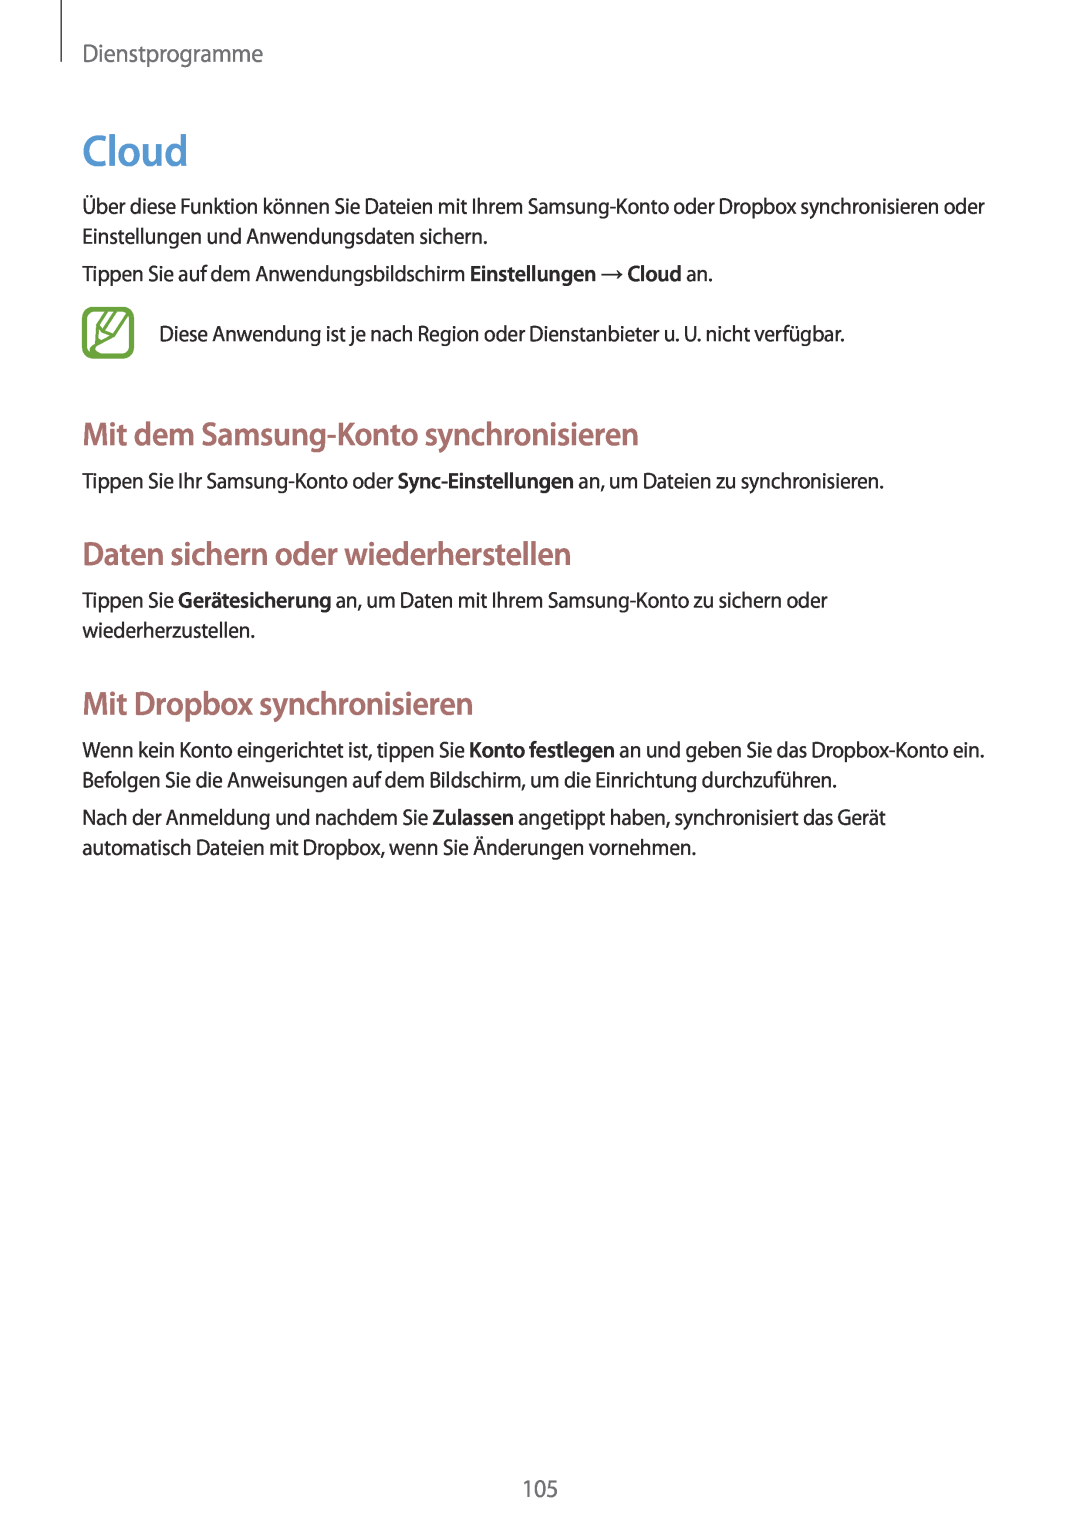 Samsung GT-N7100RWDVD2 Cloud, Mit dem Samsung-Konto synchronisieren, Daten sichern oder wiederherstellen, Dienstprogramme 